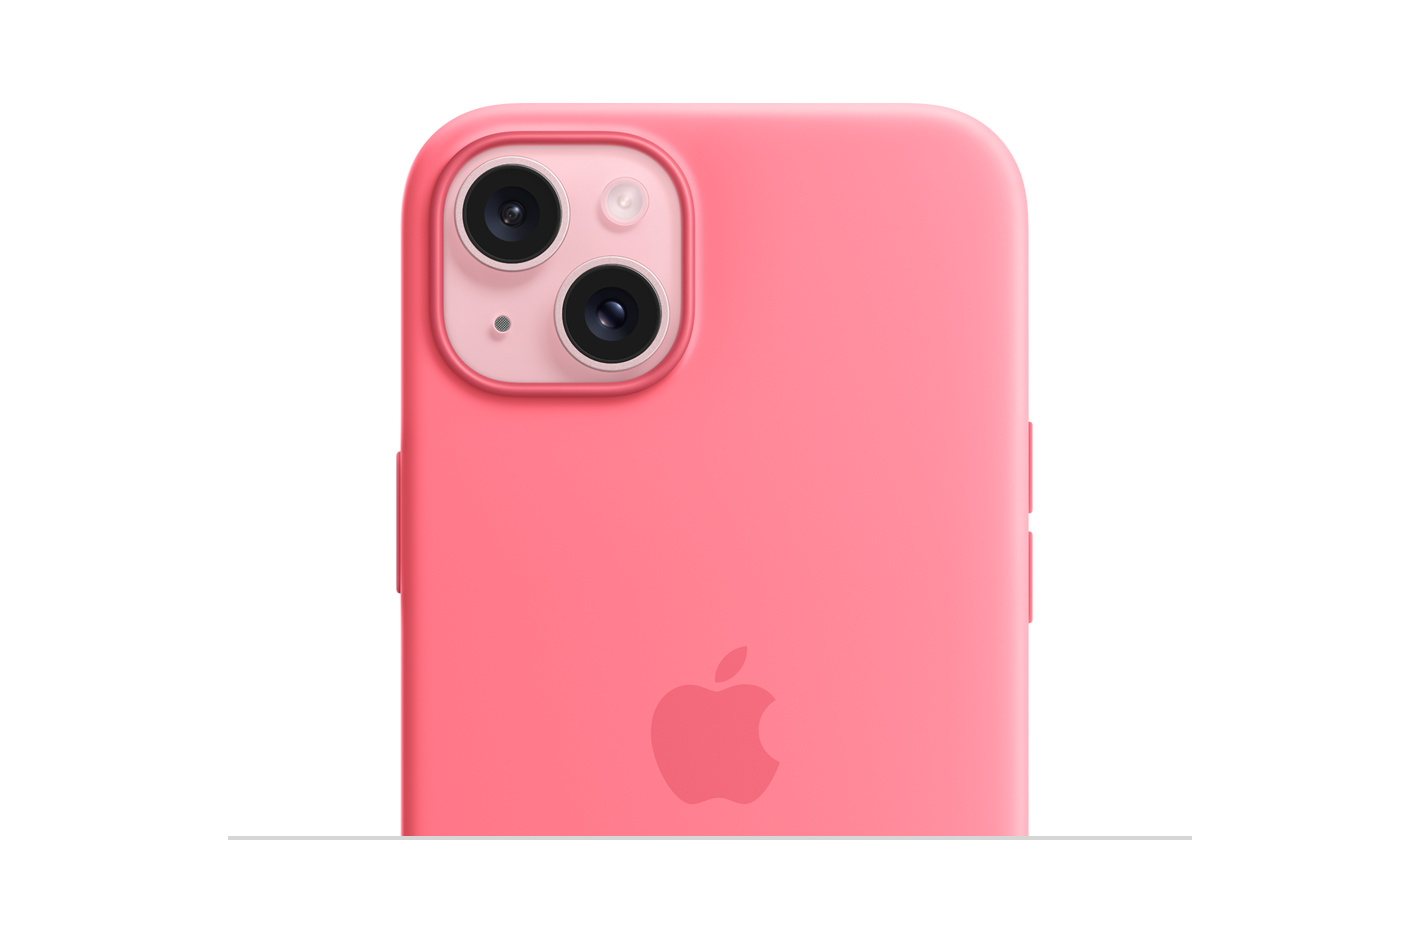 MagSafe 硅胶保护壳粉色款，中心嵌有 Apple 标志，安装在粉色外观的 iPhone 15 上，可看到露出的摄像头。